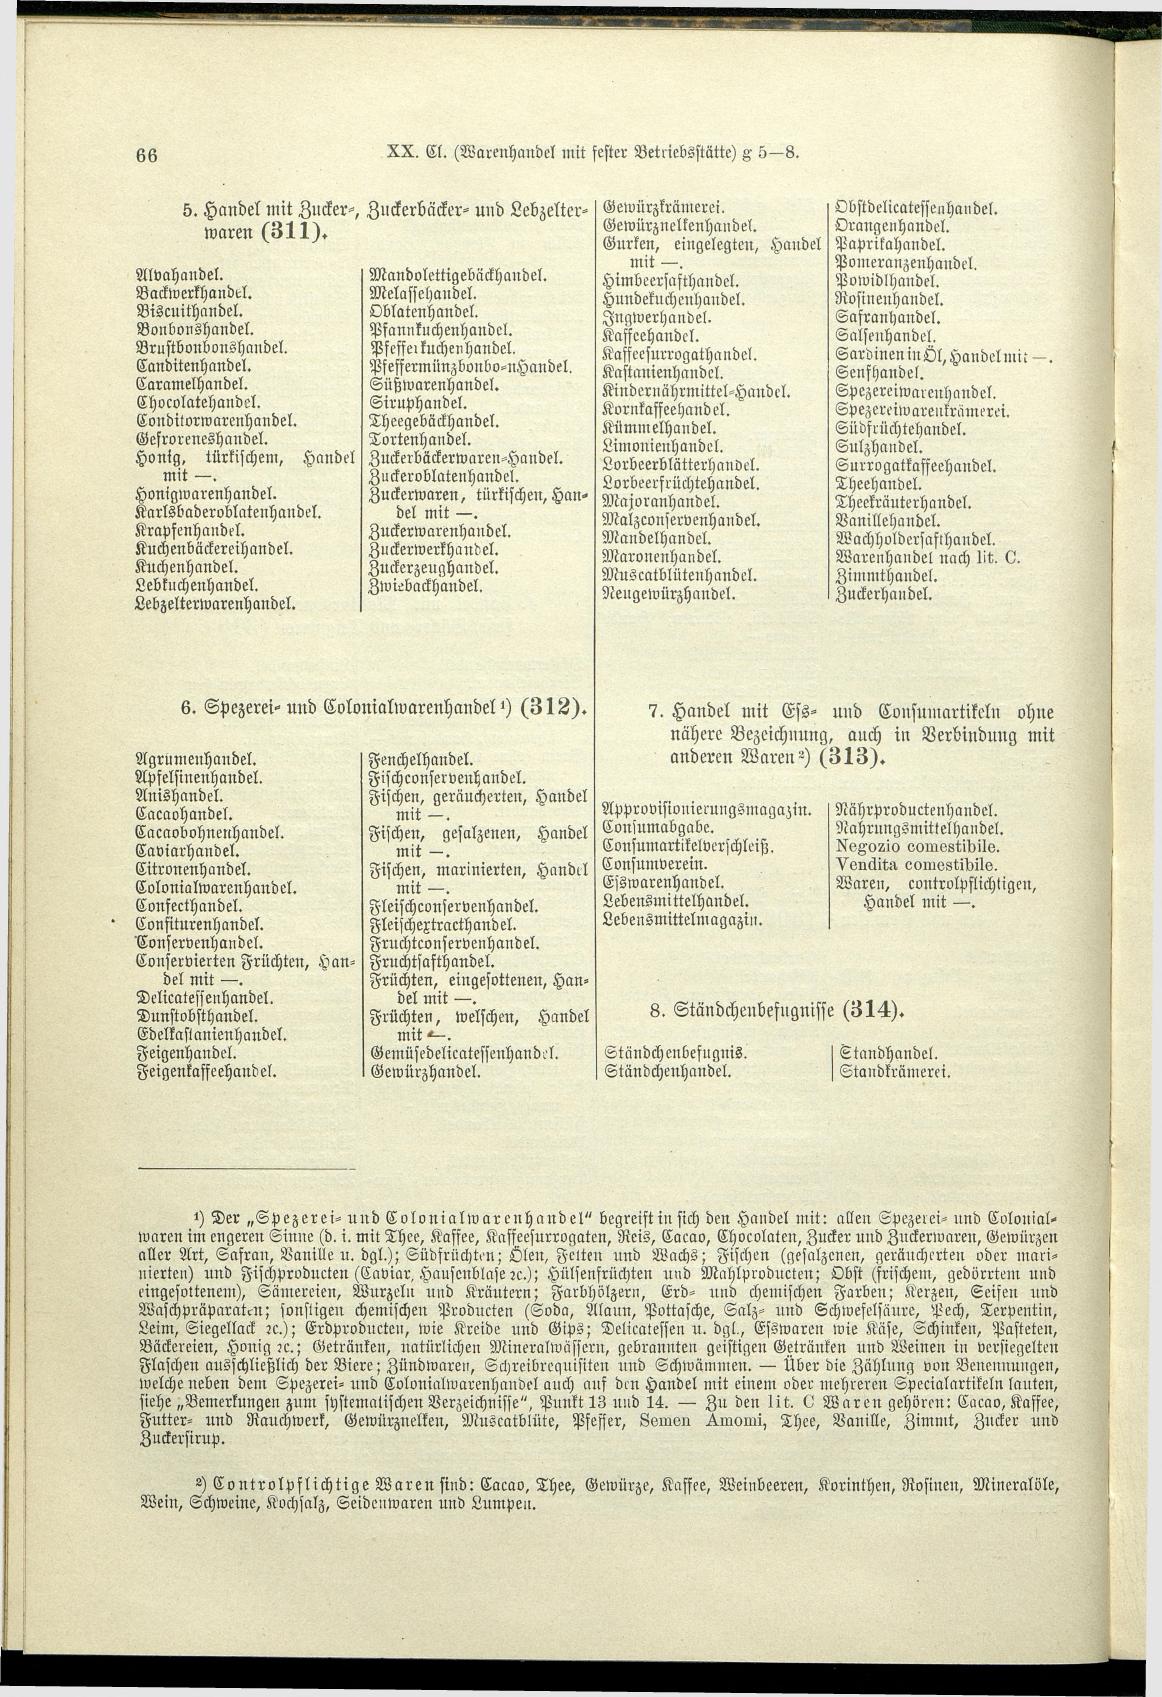 Verzeichnis der Gewerbe der im Reichsrathe vertretenen Königreiche und Länder 1900 - Seite 70